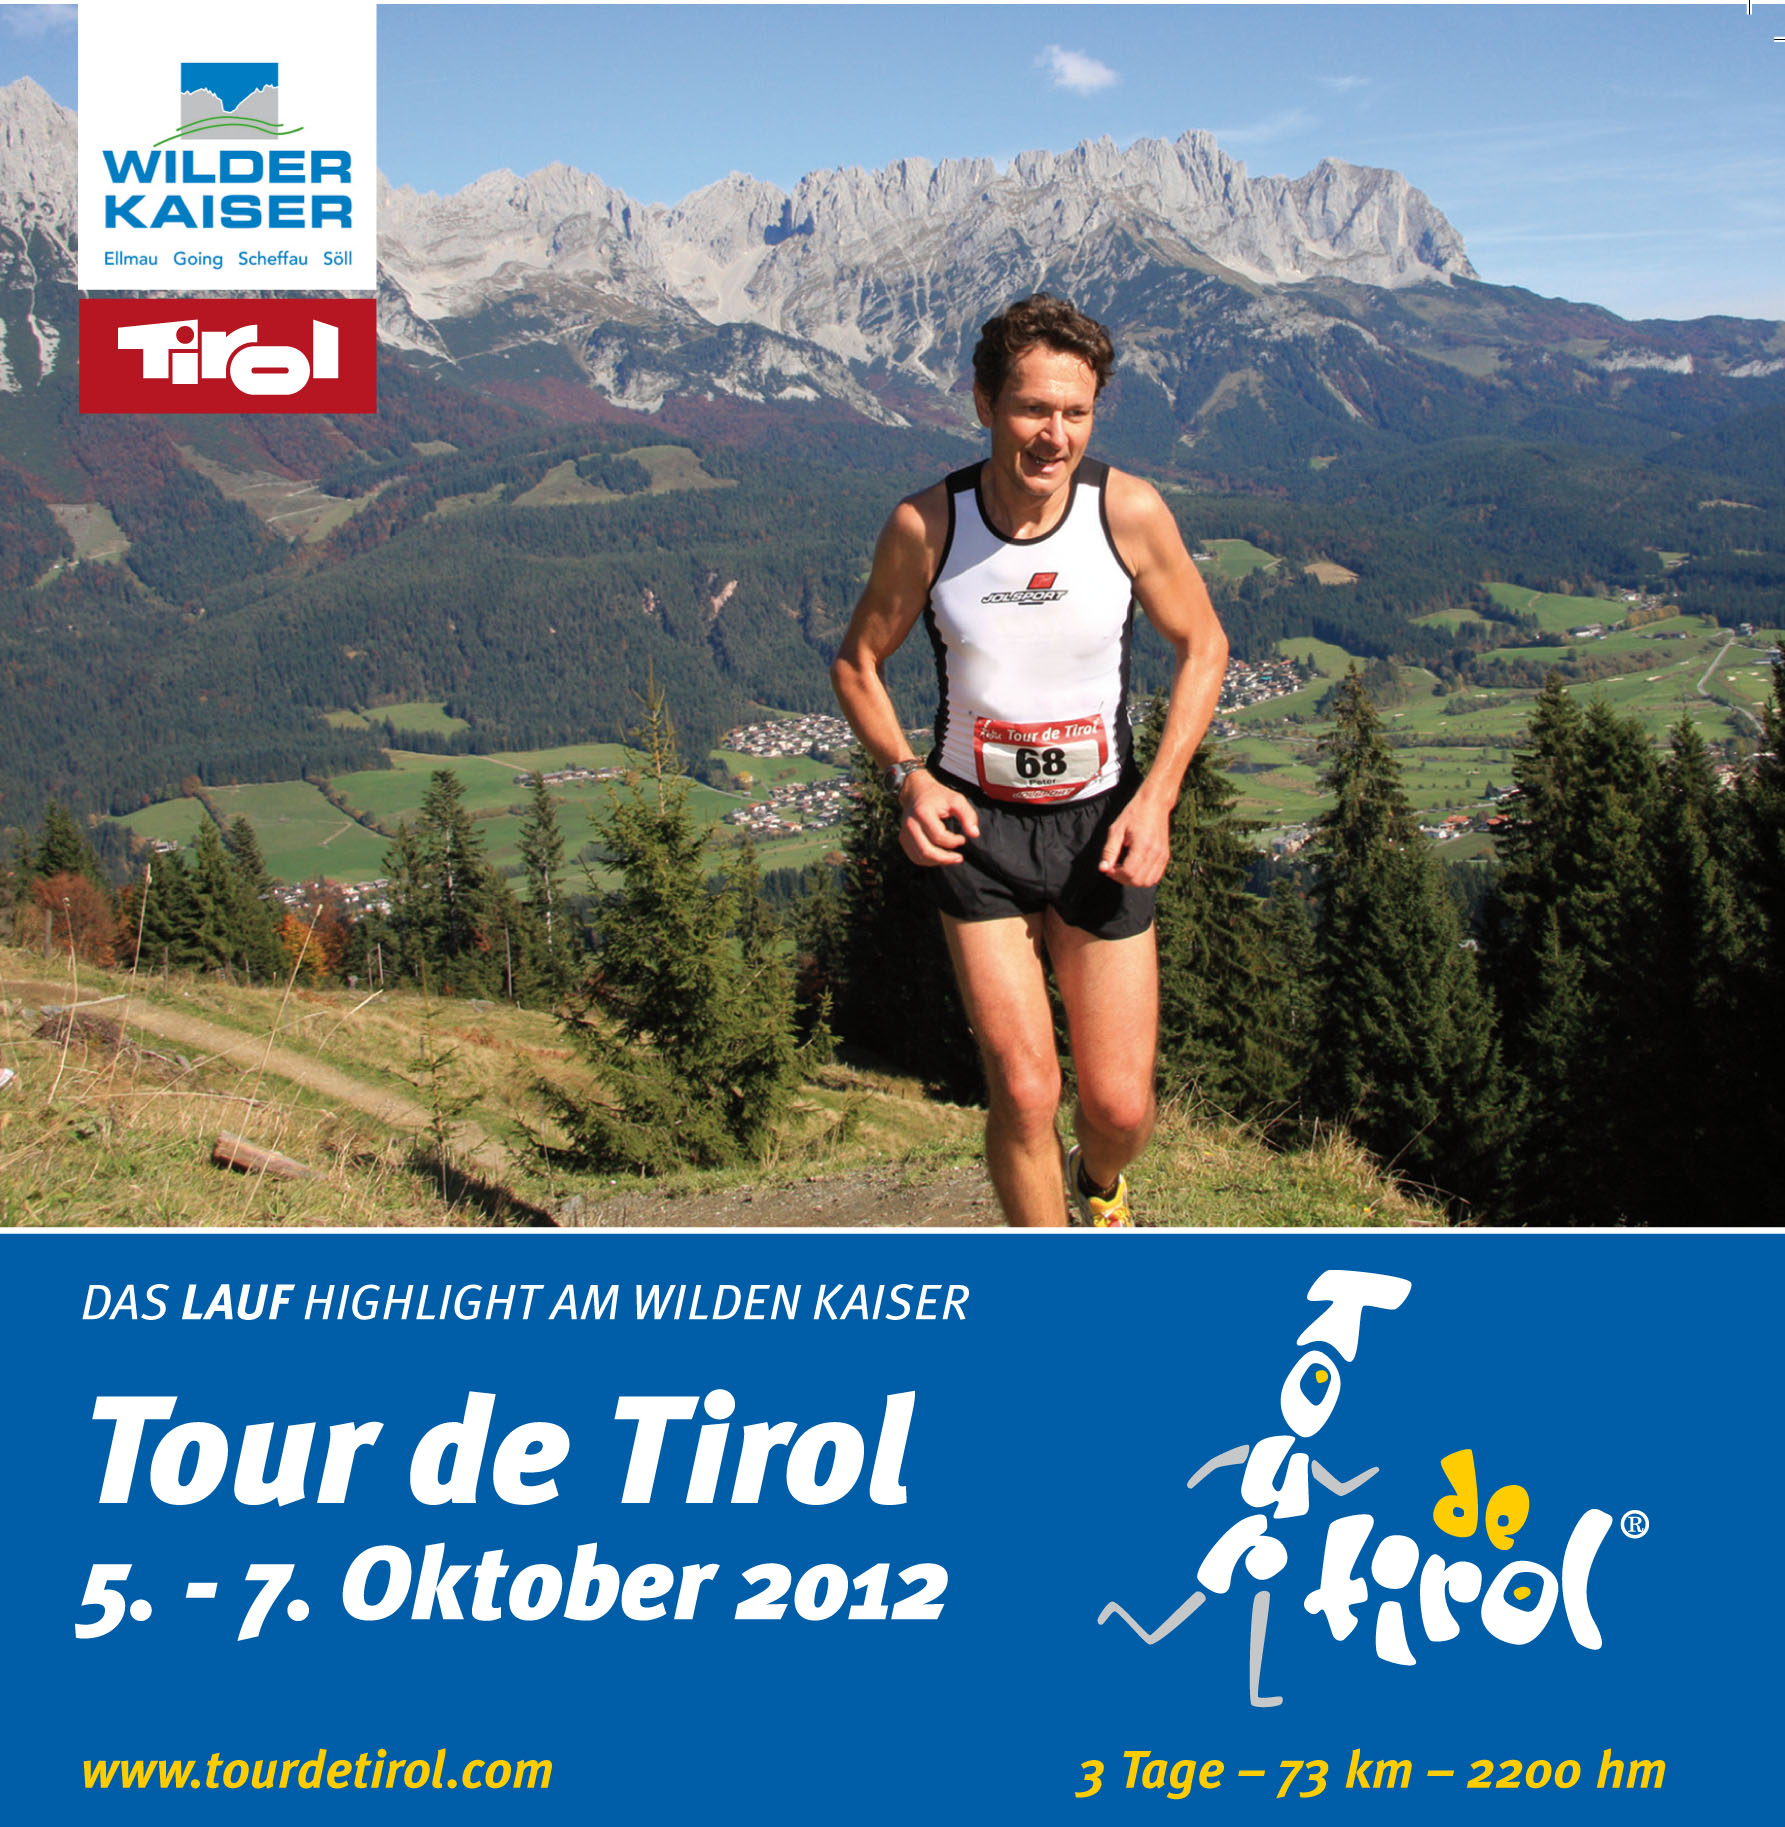 Tour de Tirol 2012